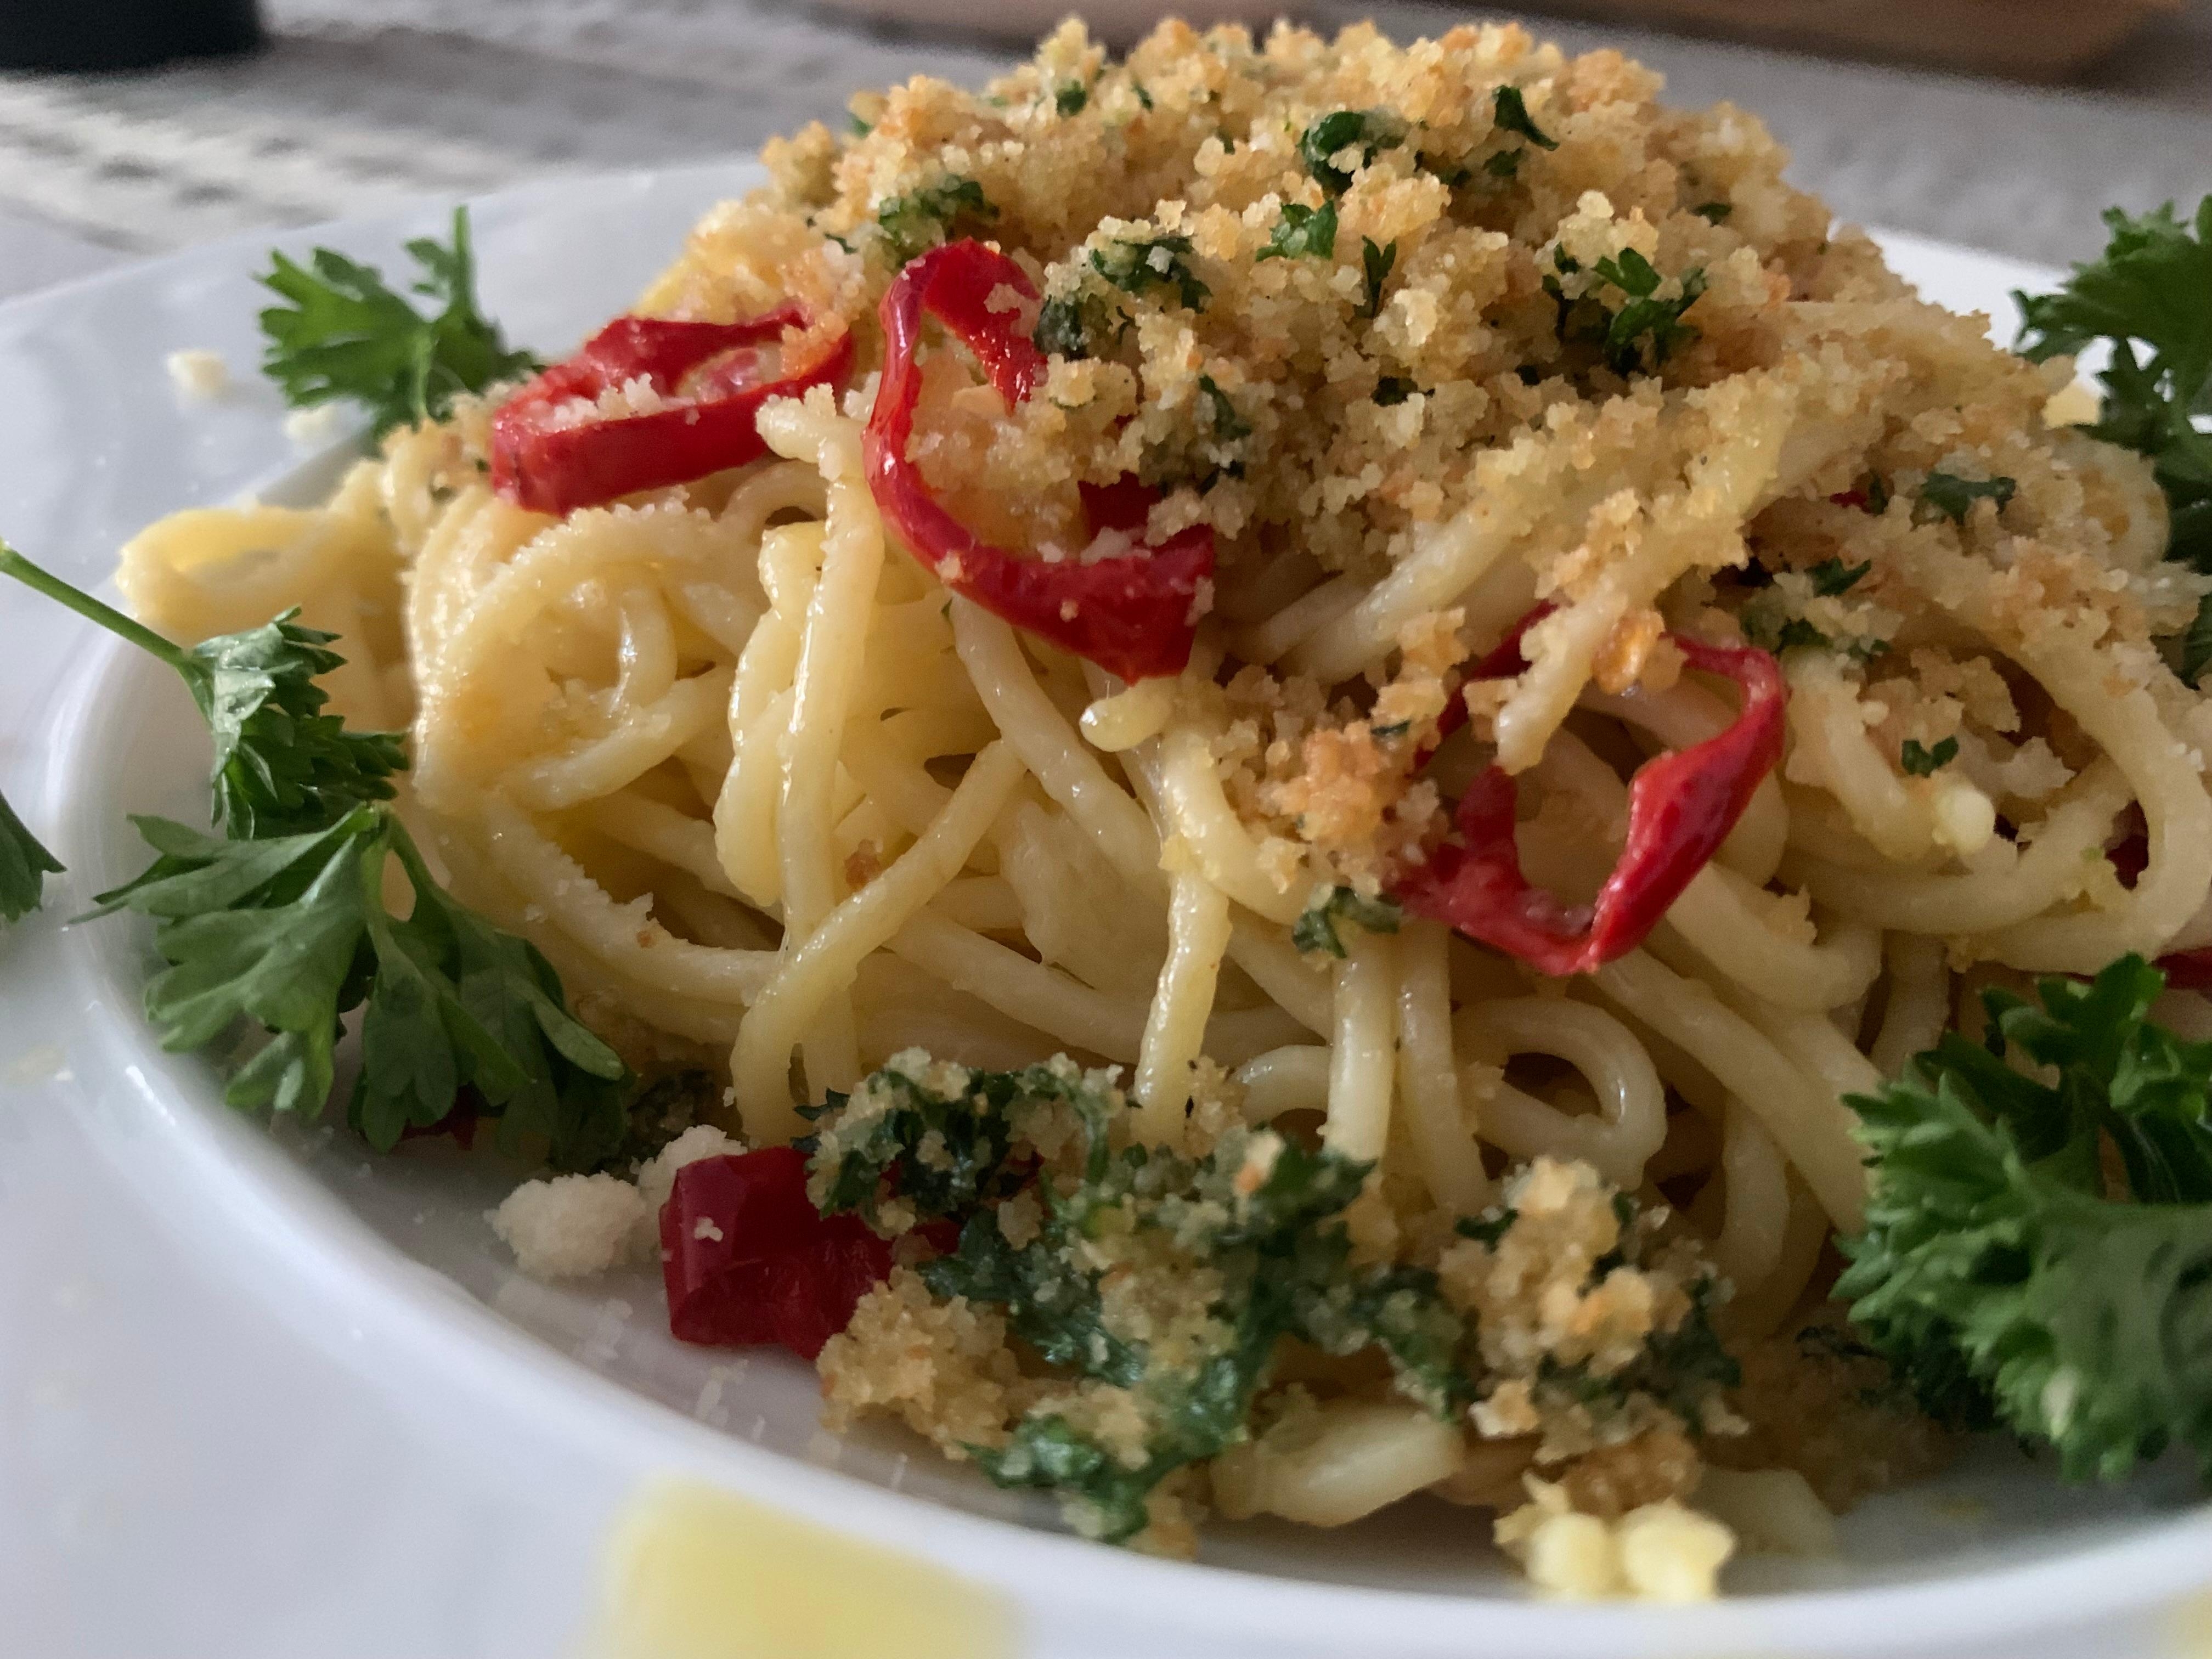 Spaghetti aglio e olio e peperoncino
🍝
#food #italienisch #heimat #kochen 